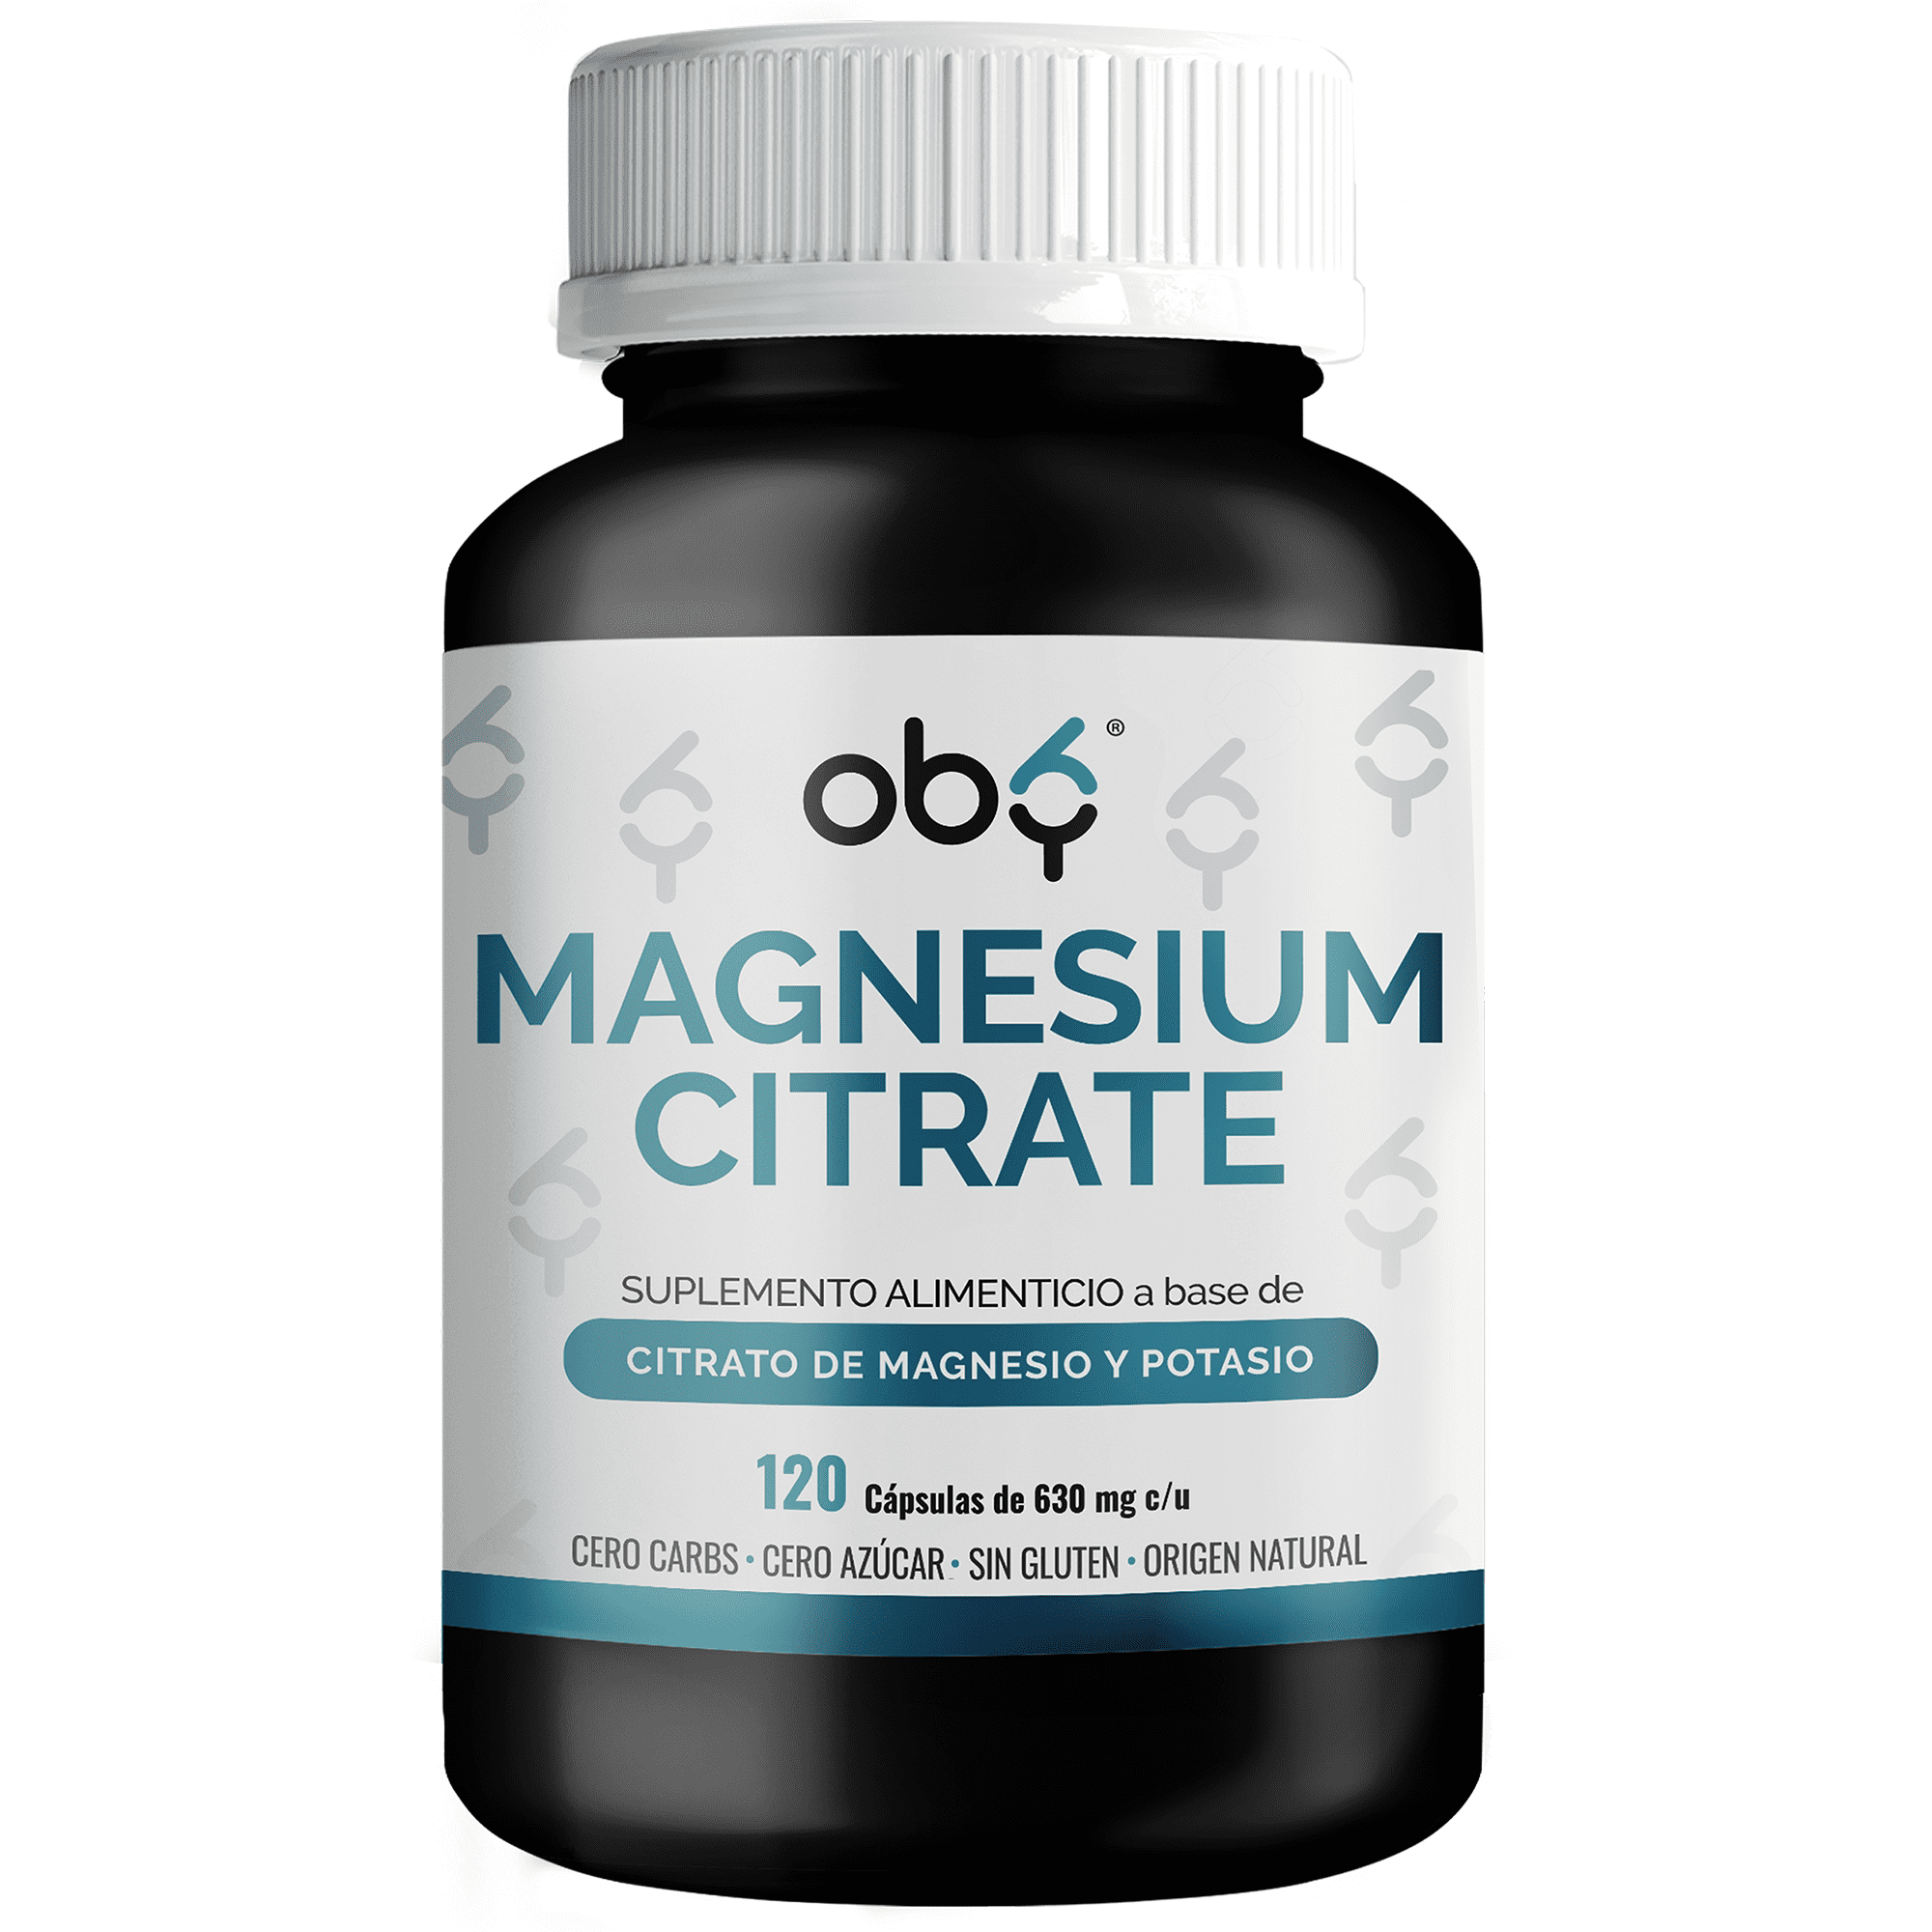 Citrato de magnesio y citrato de potasio - 120 cápsulas para hasta 4 meses | combinación de ingredientes naturales citrato de magnesio y potasio oby magnesium citrate